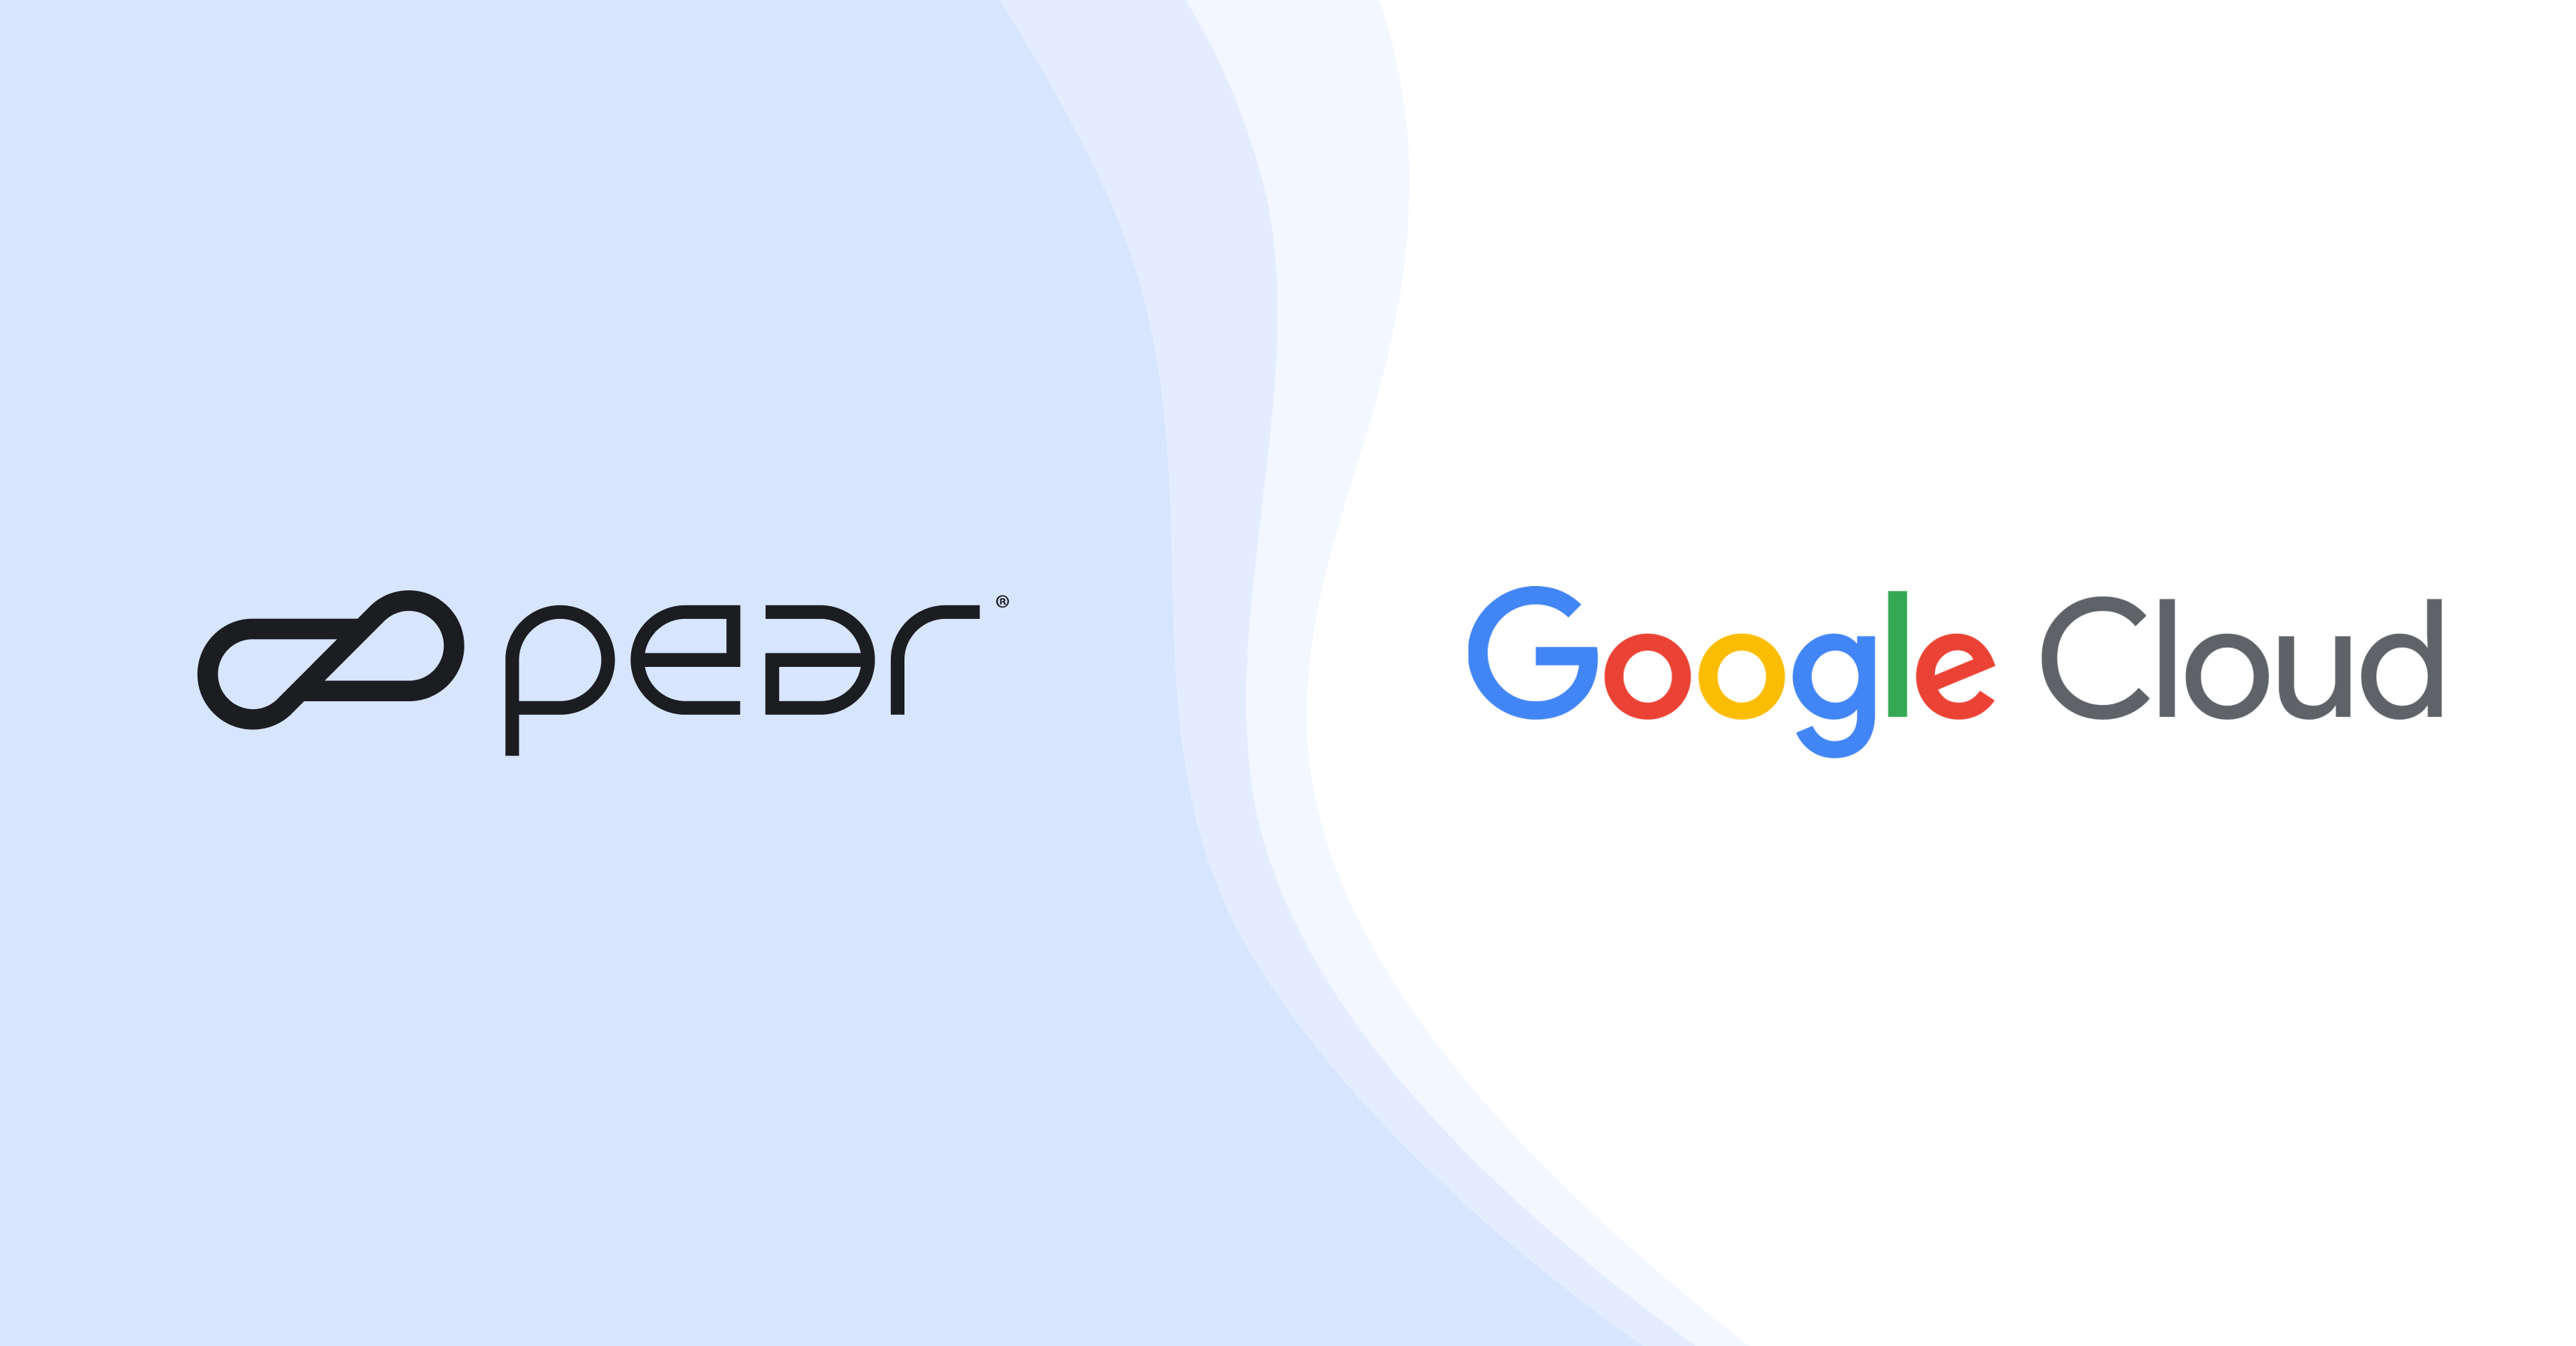 Pear x Google Cloud partnership